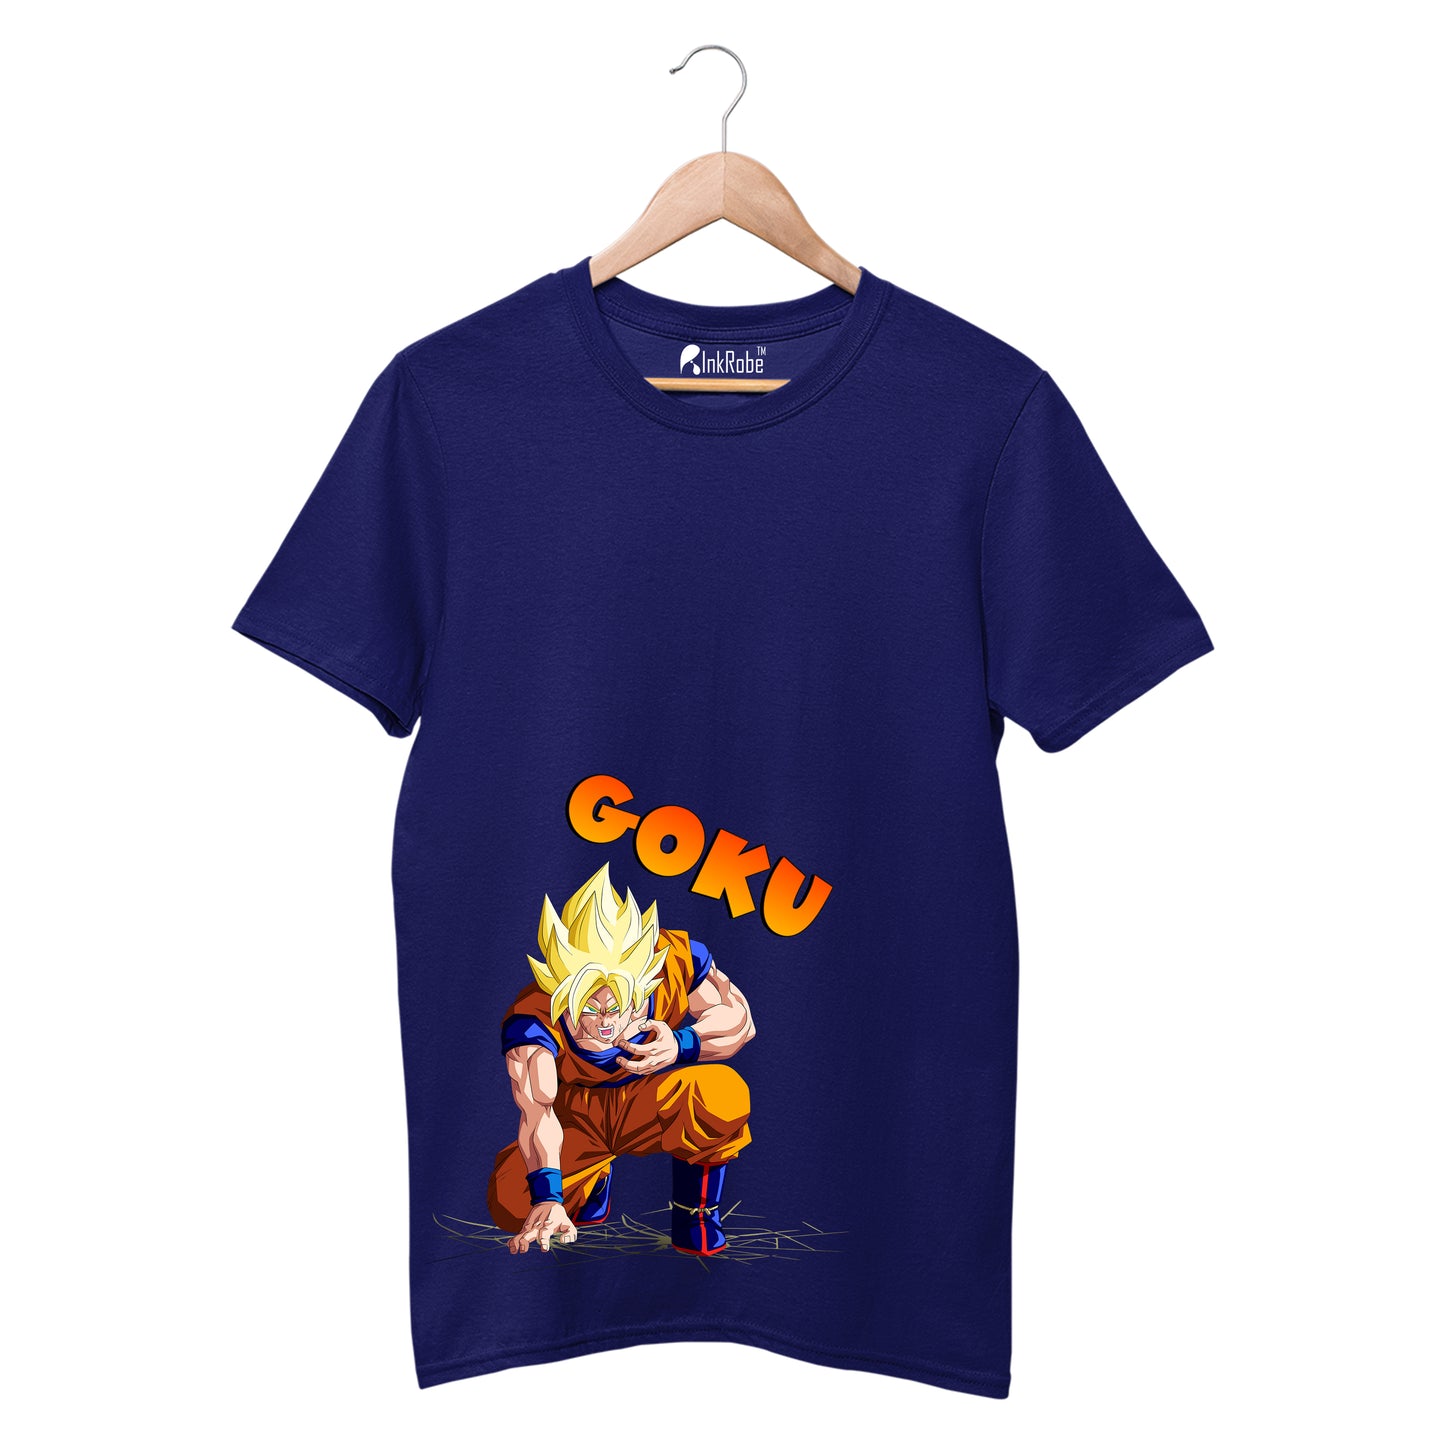 Goku on Fire - Anime T-Shirt